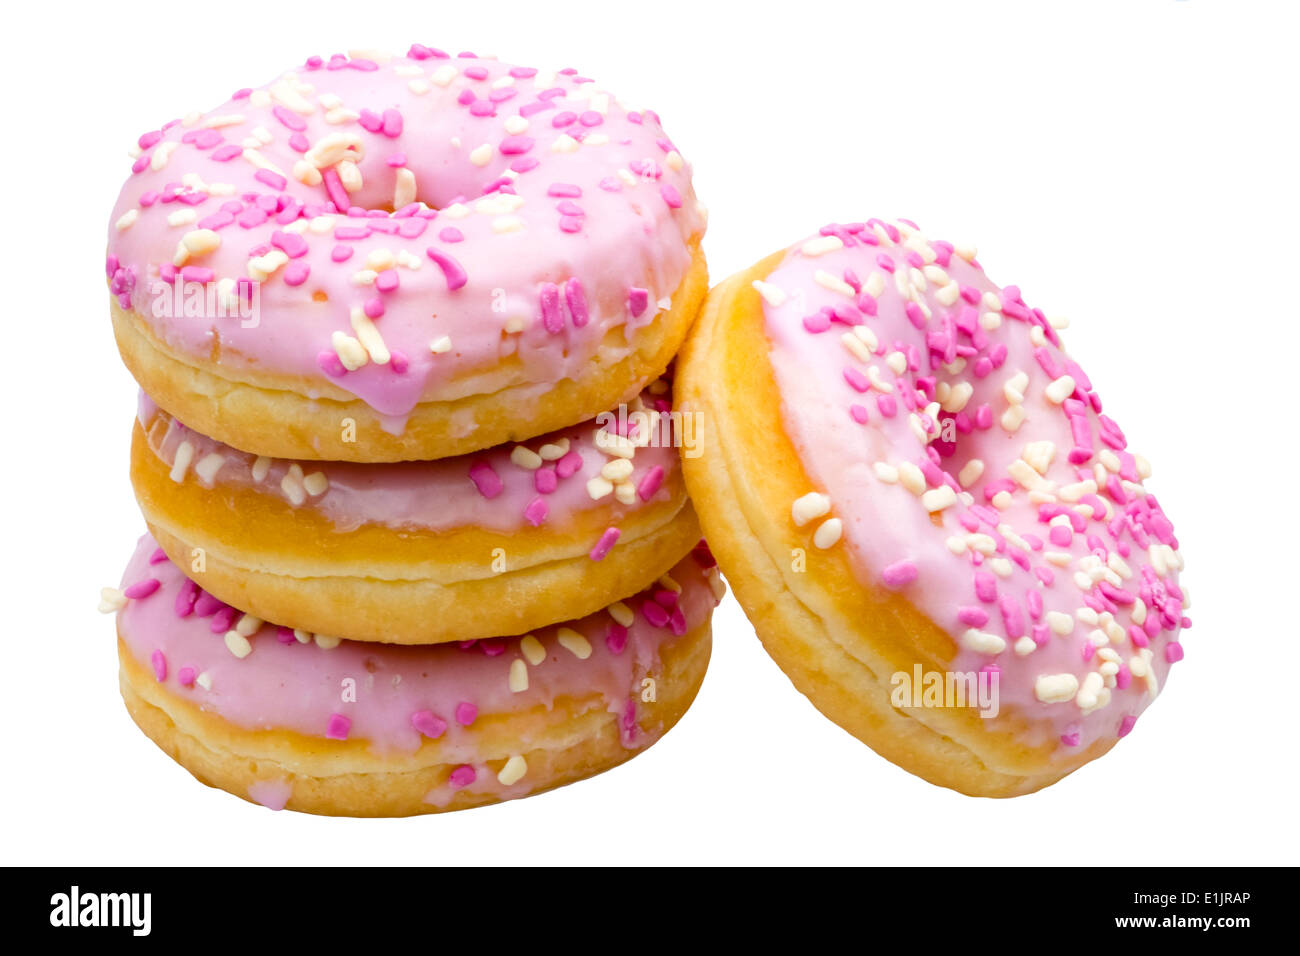 Ring donas con lloviznas y glaseado rosa. Donuts glaseado con glaseado de fresa. Foto de stock